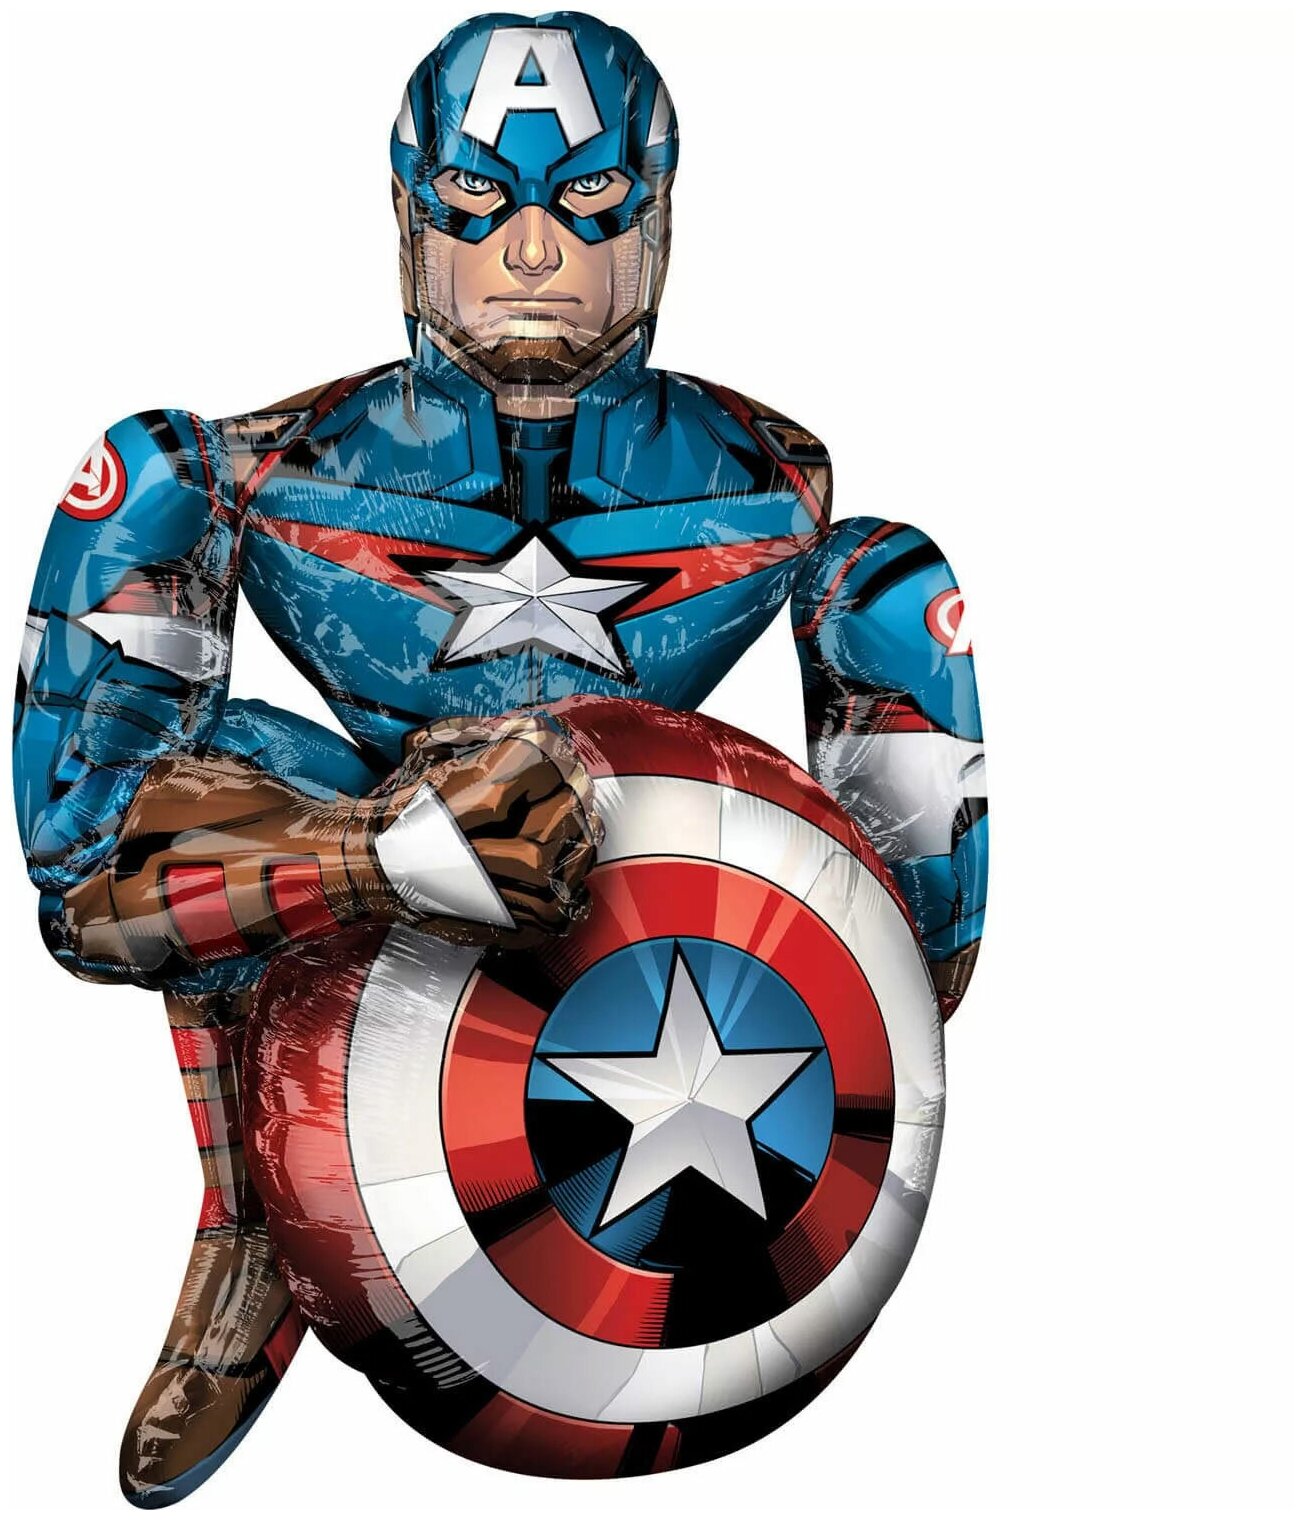 Шар ходячий Мстители Капитан Америка, 86 Х 99 см